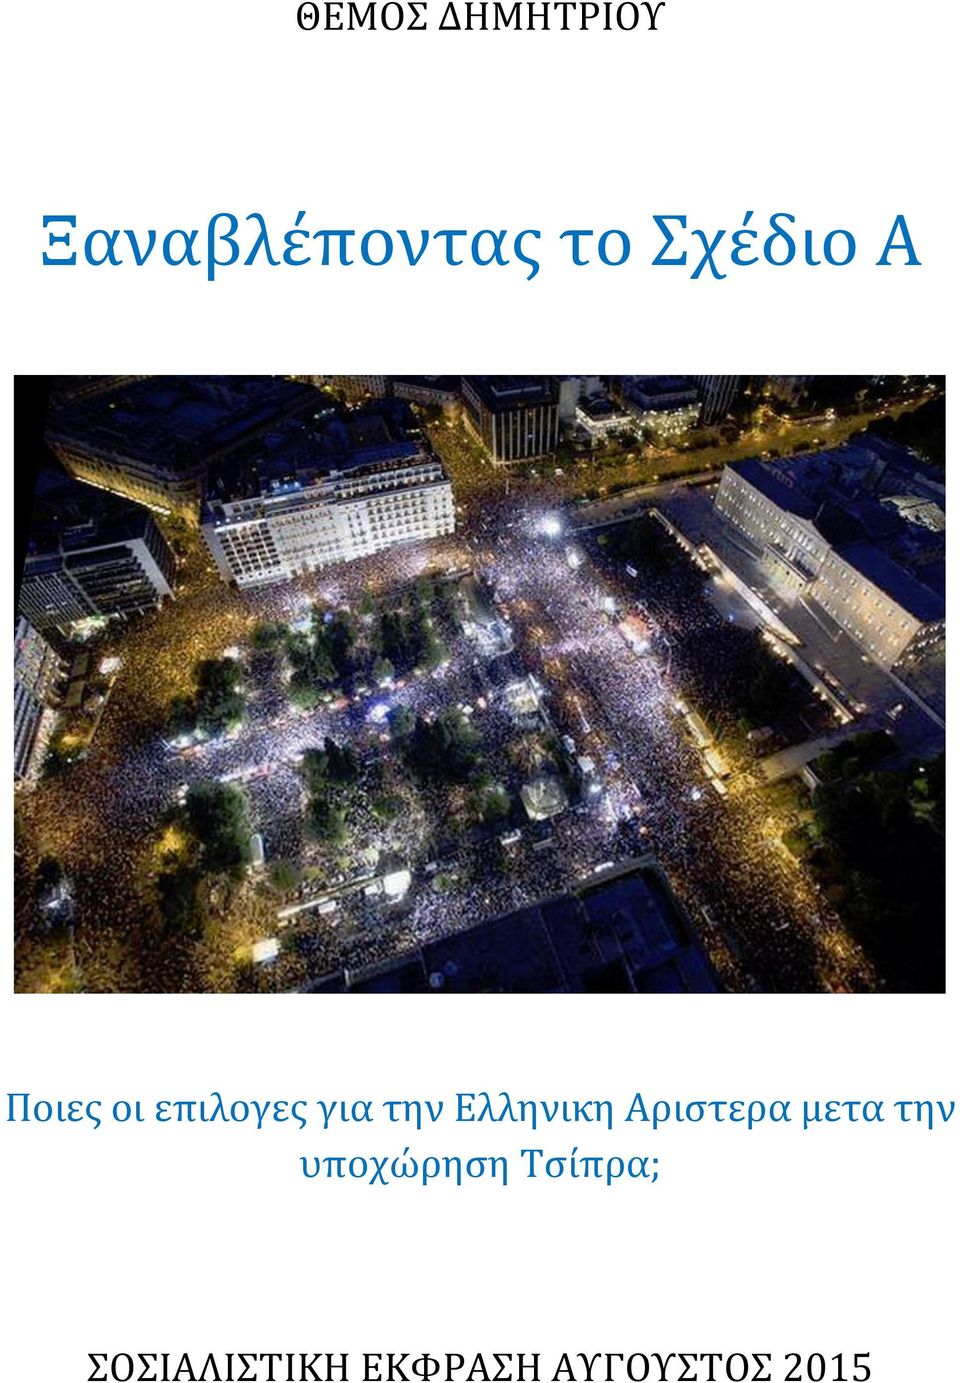 Ελληνικη Αριστερα μετα την υποχώρηση